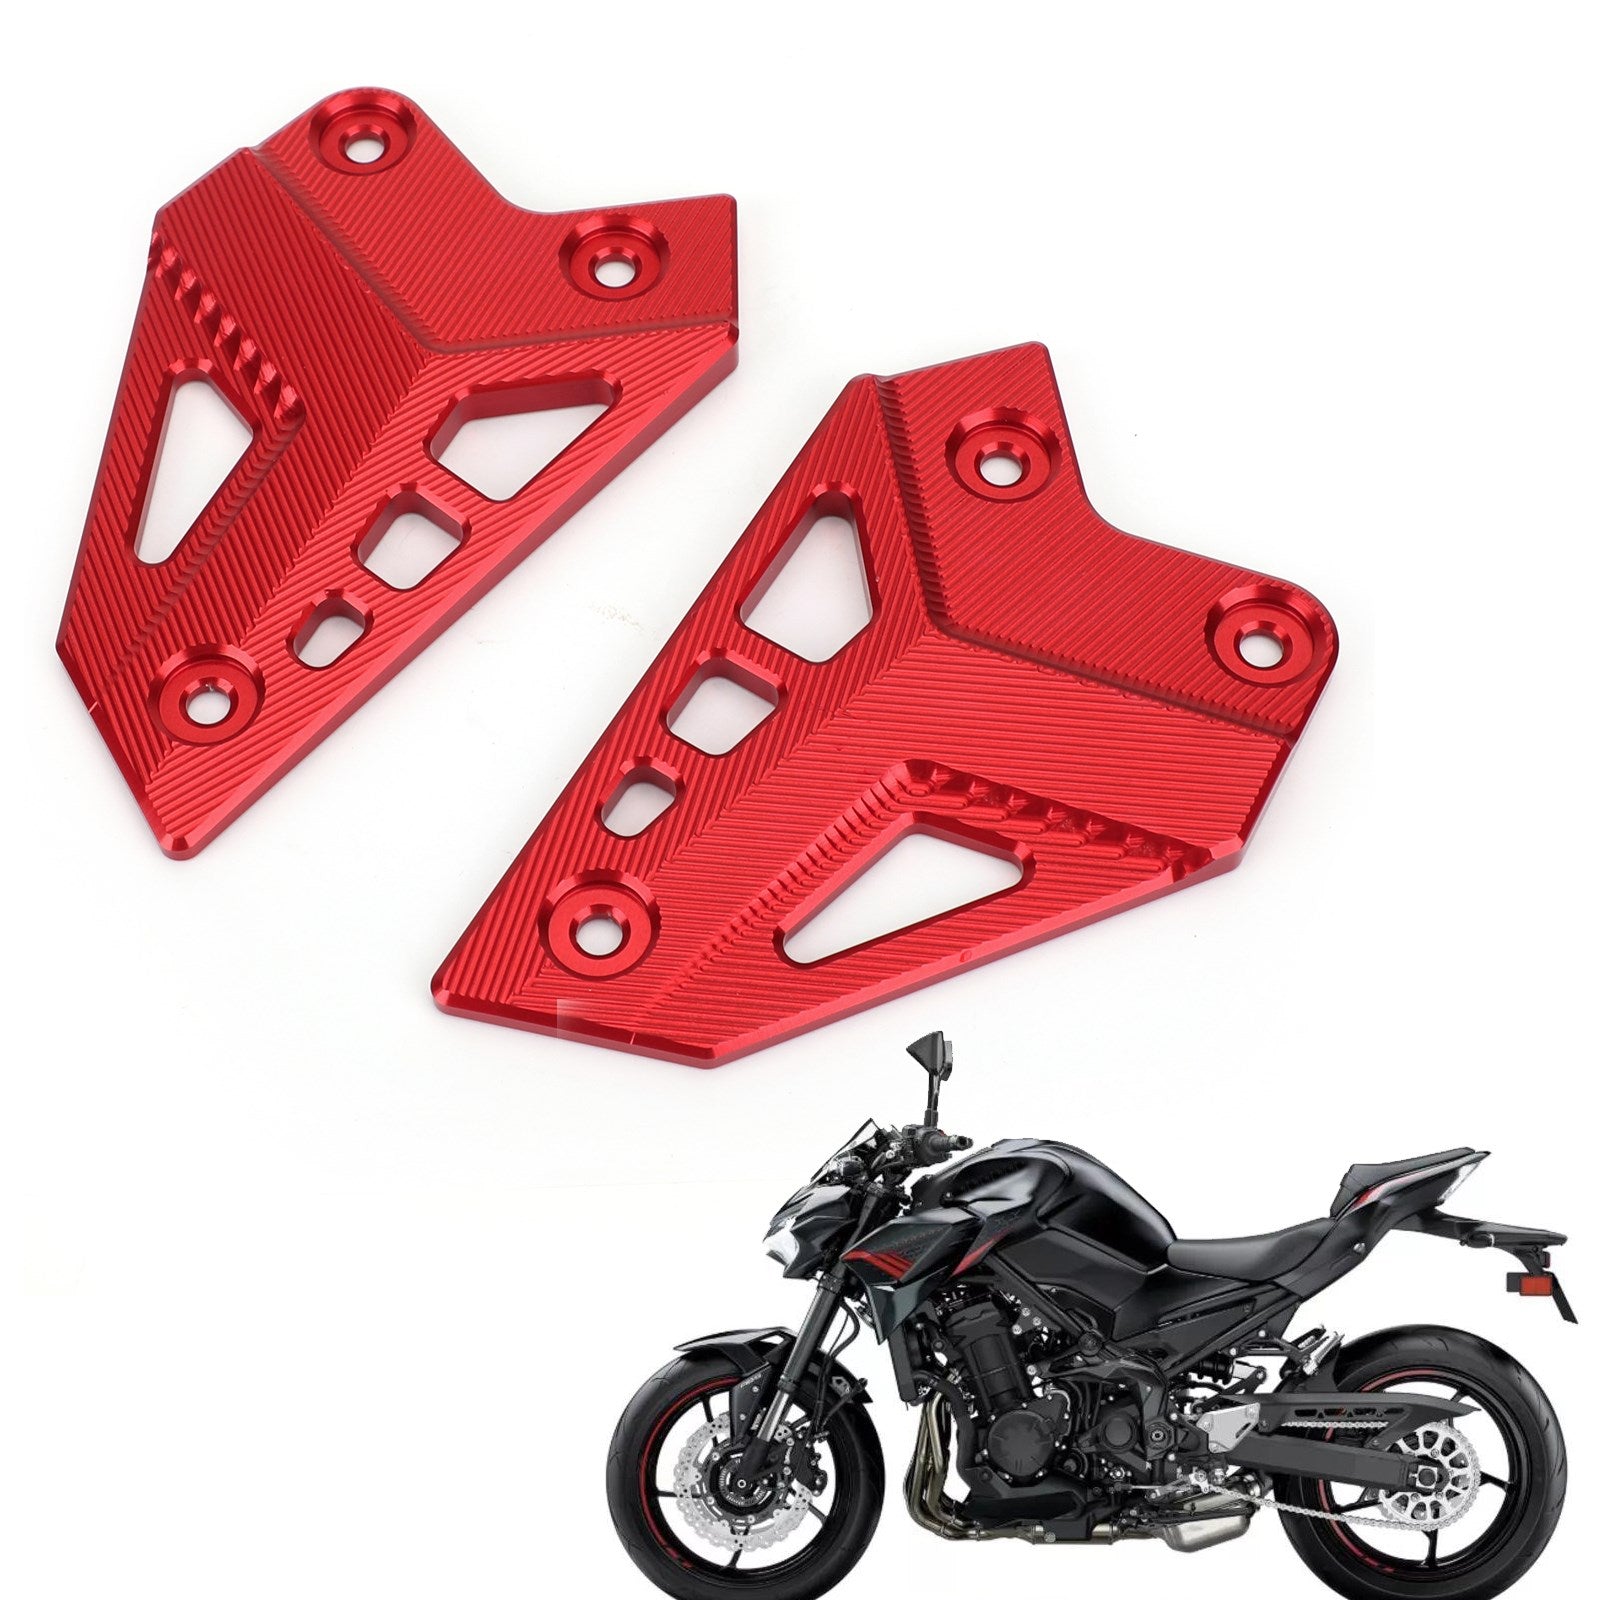 Pour les repose-pieds talons et plaques rouges pour moto Kawasaki Z900 2017 2018 2019 2020 2021 2022